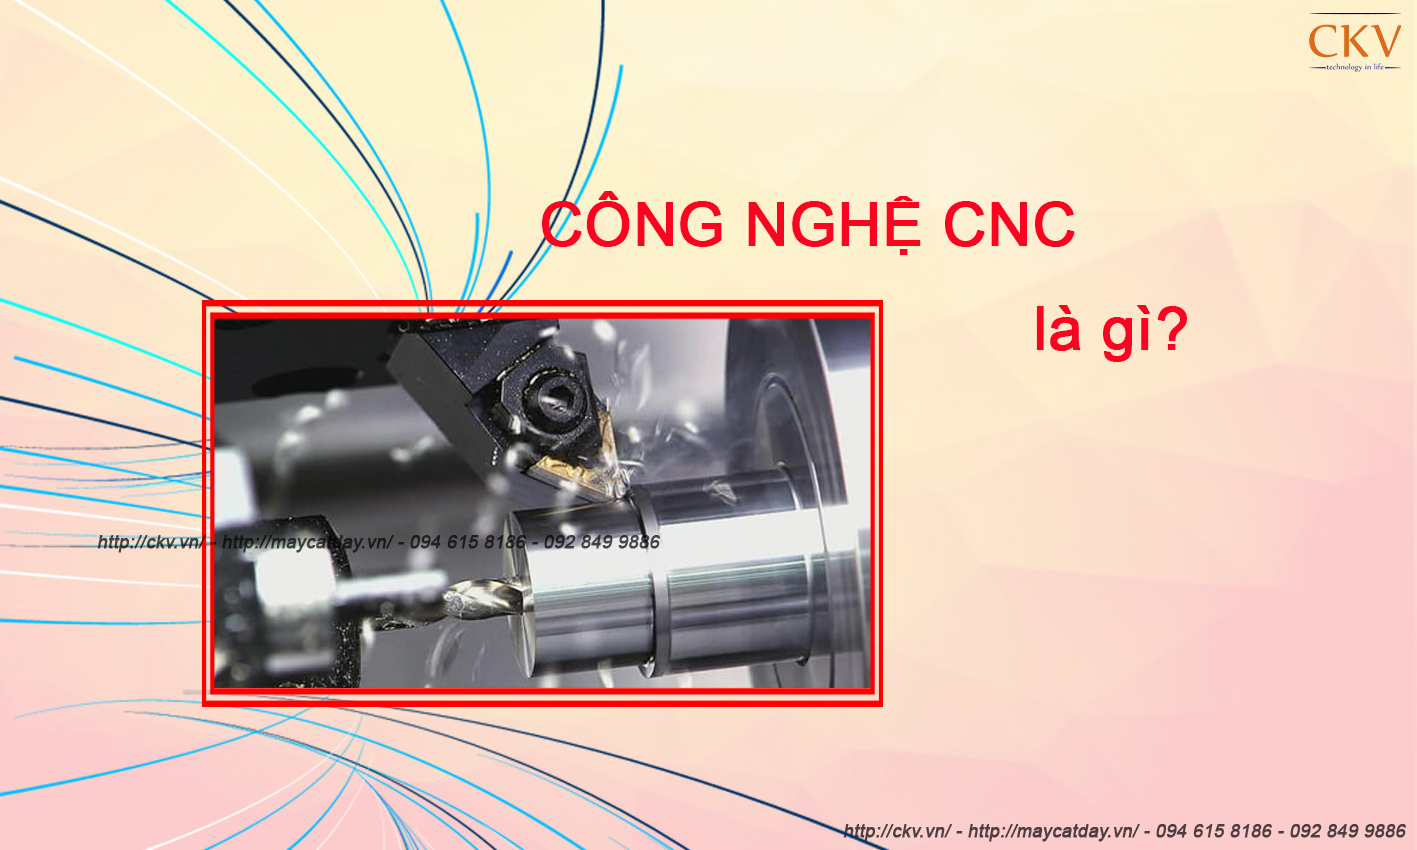 Công nghệ CNC là gì